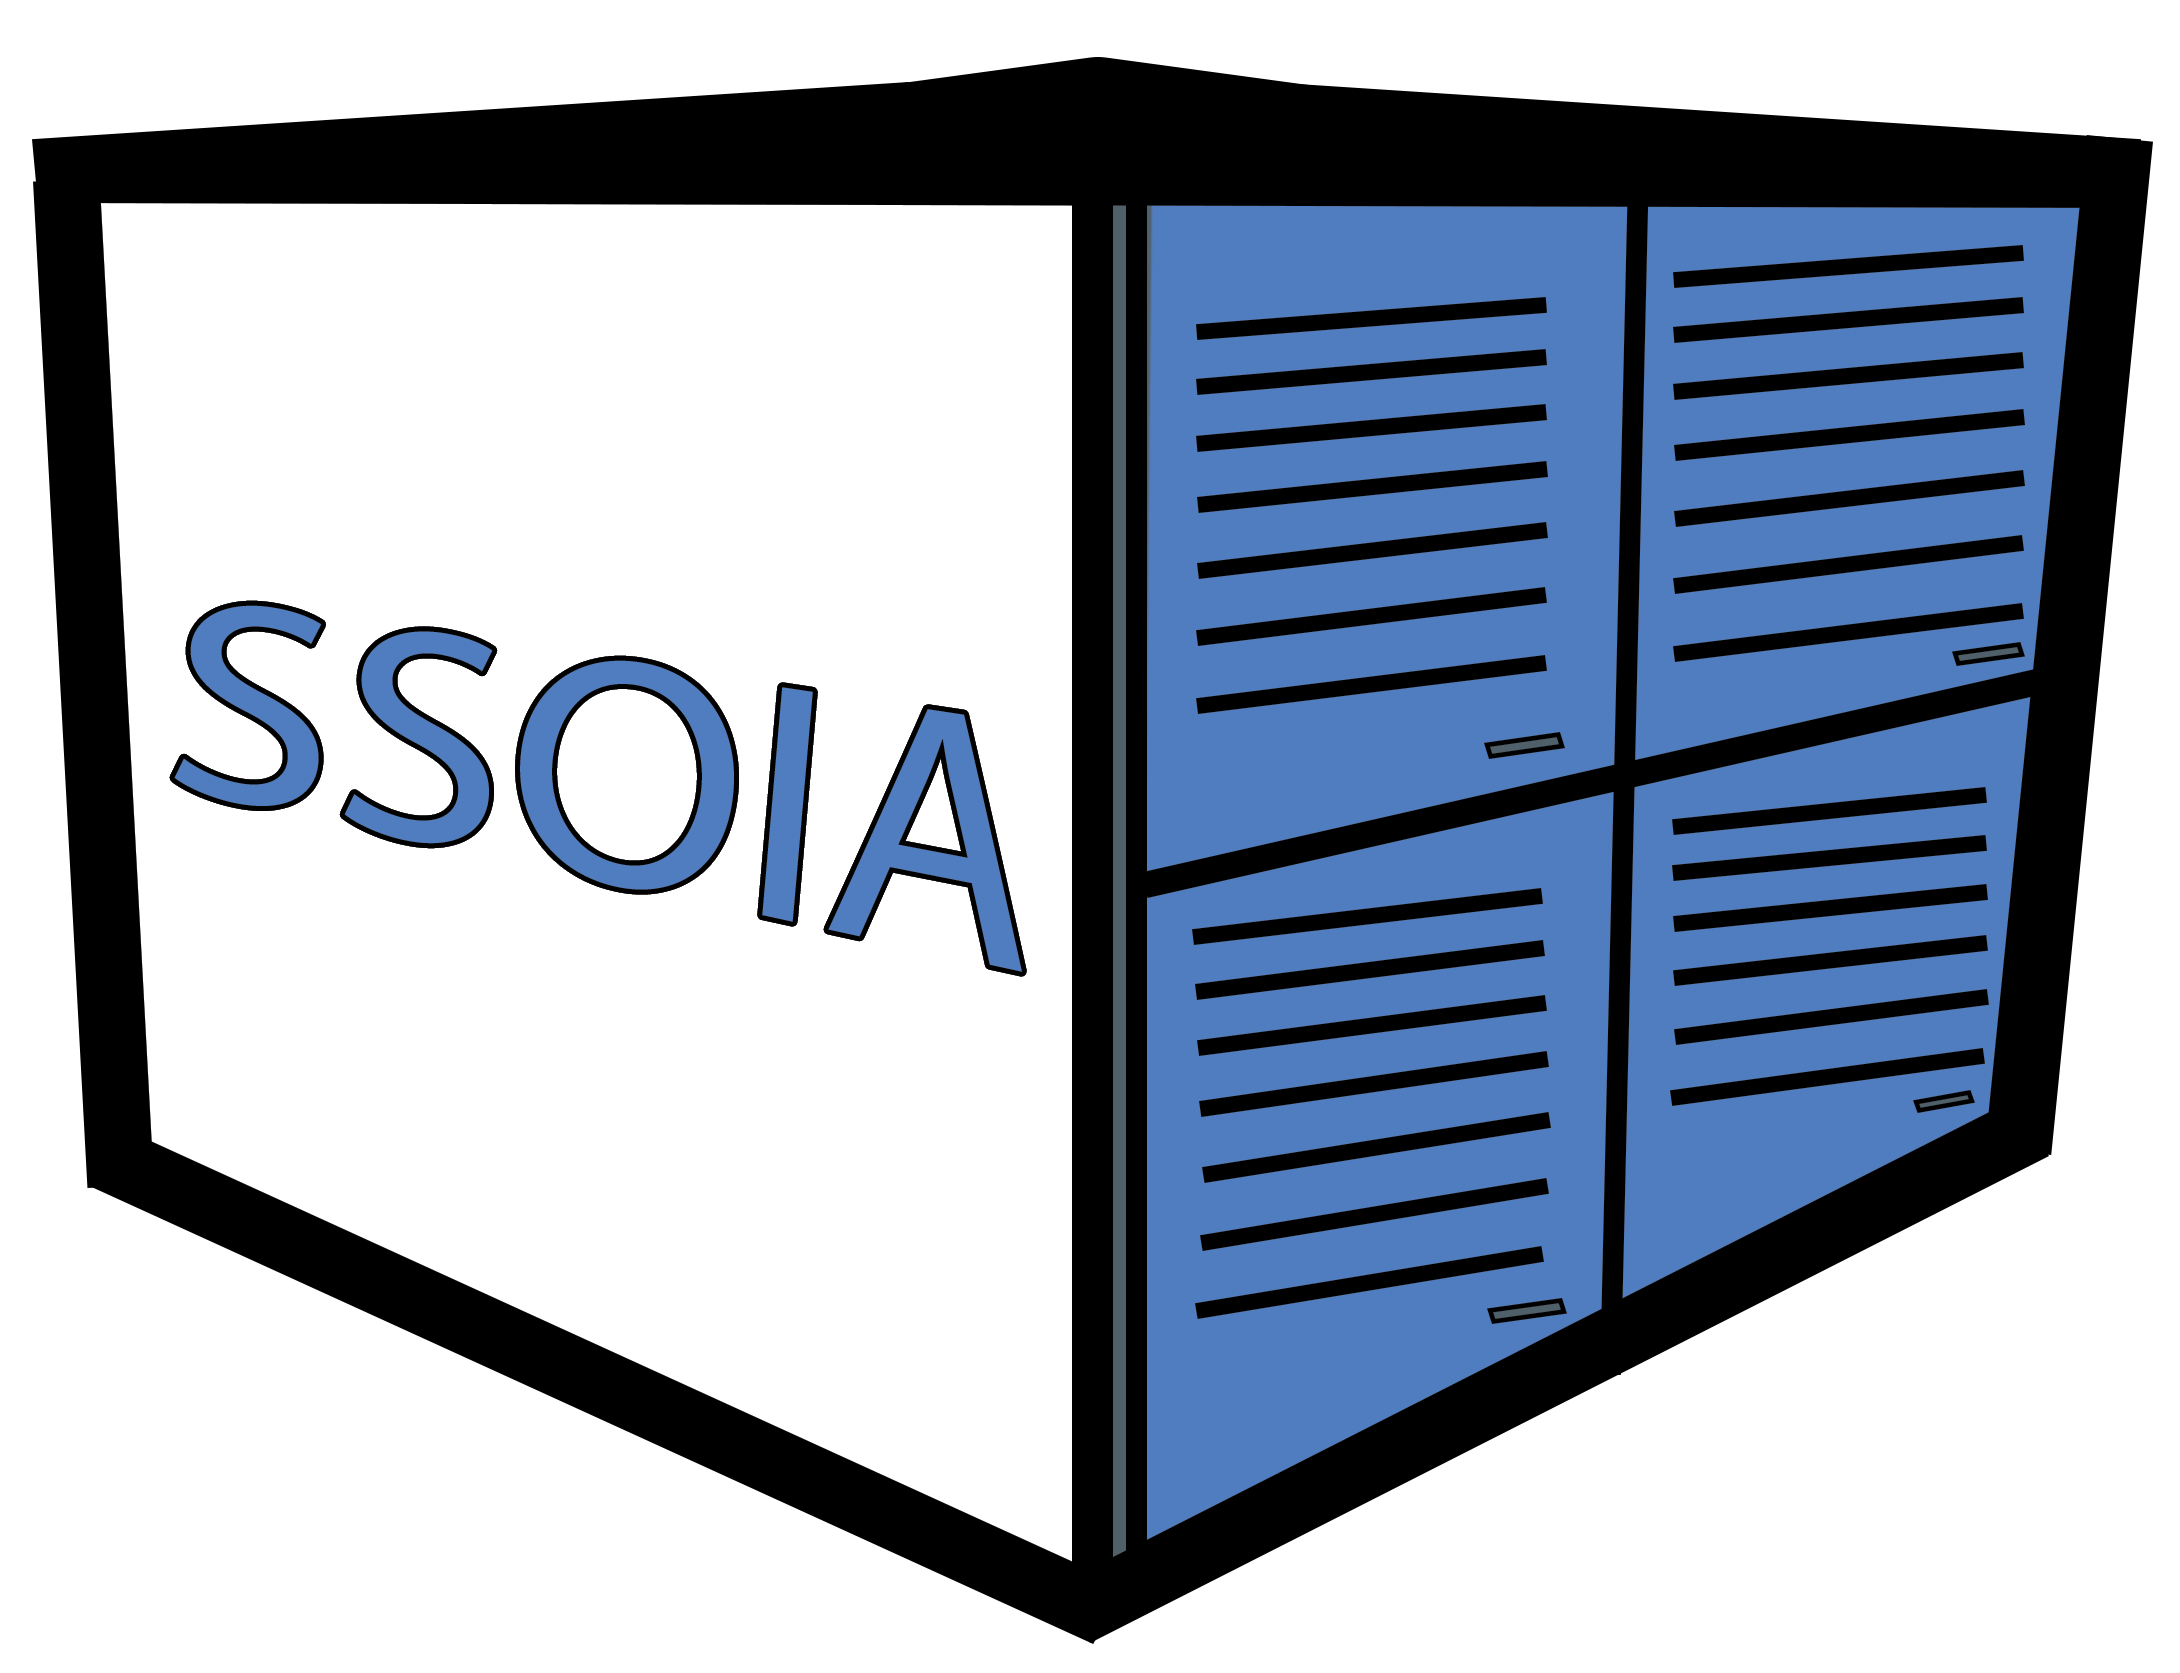 SSOIA logo